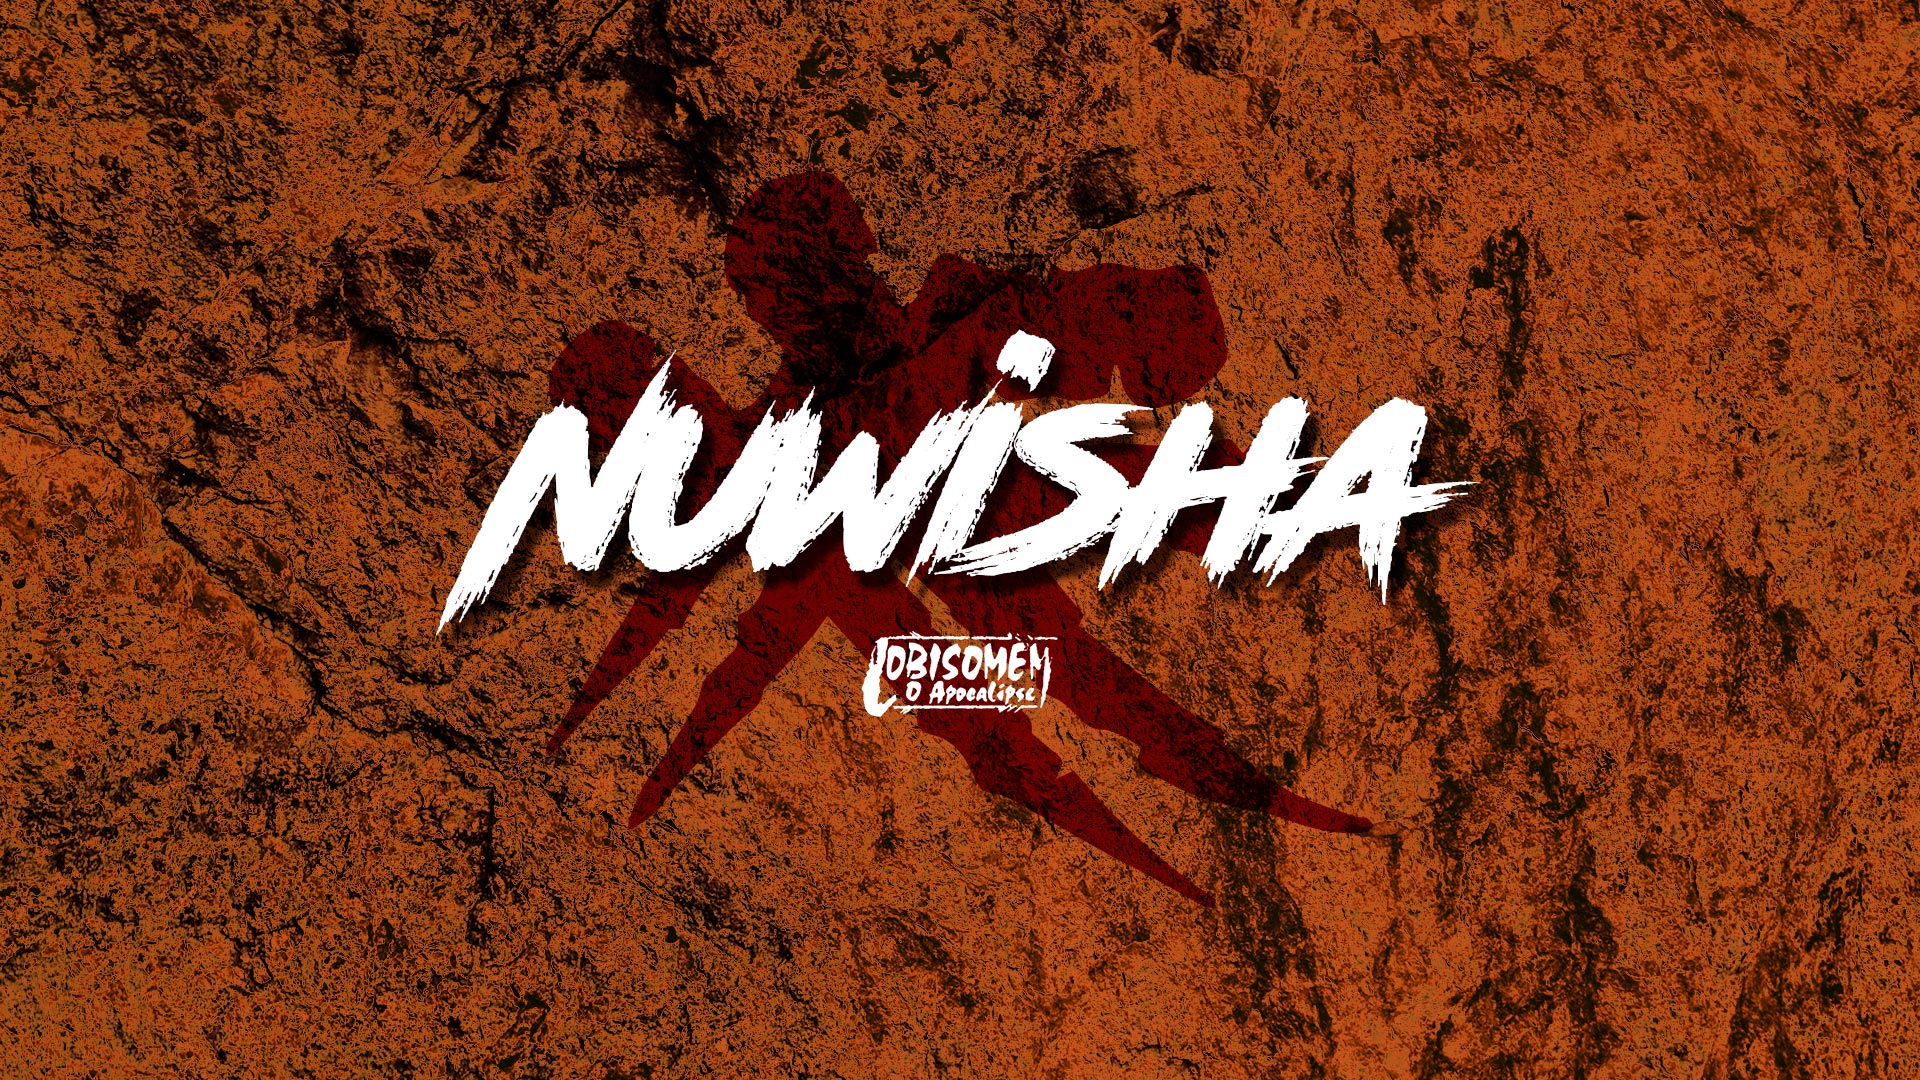 Nuwisha – Feras de Lobisomem O Apocalipse